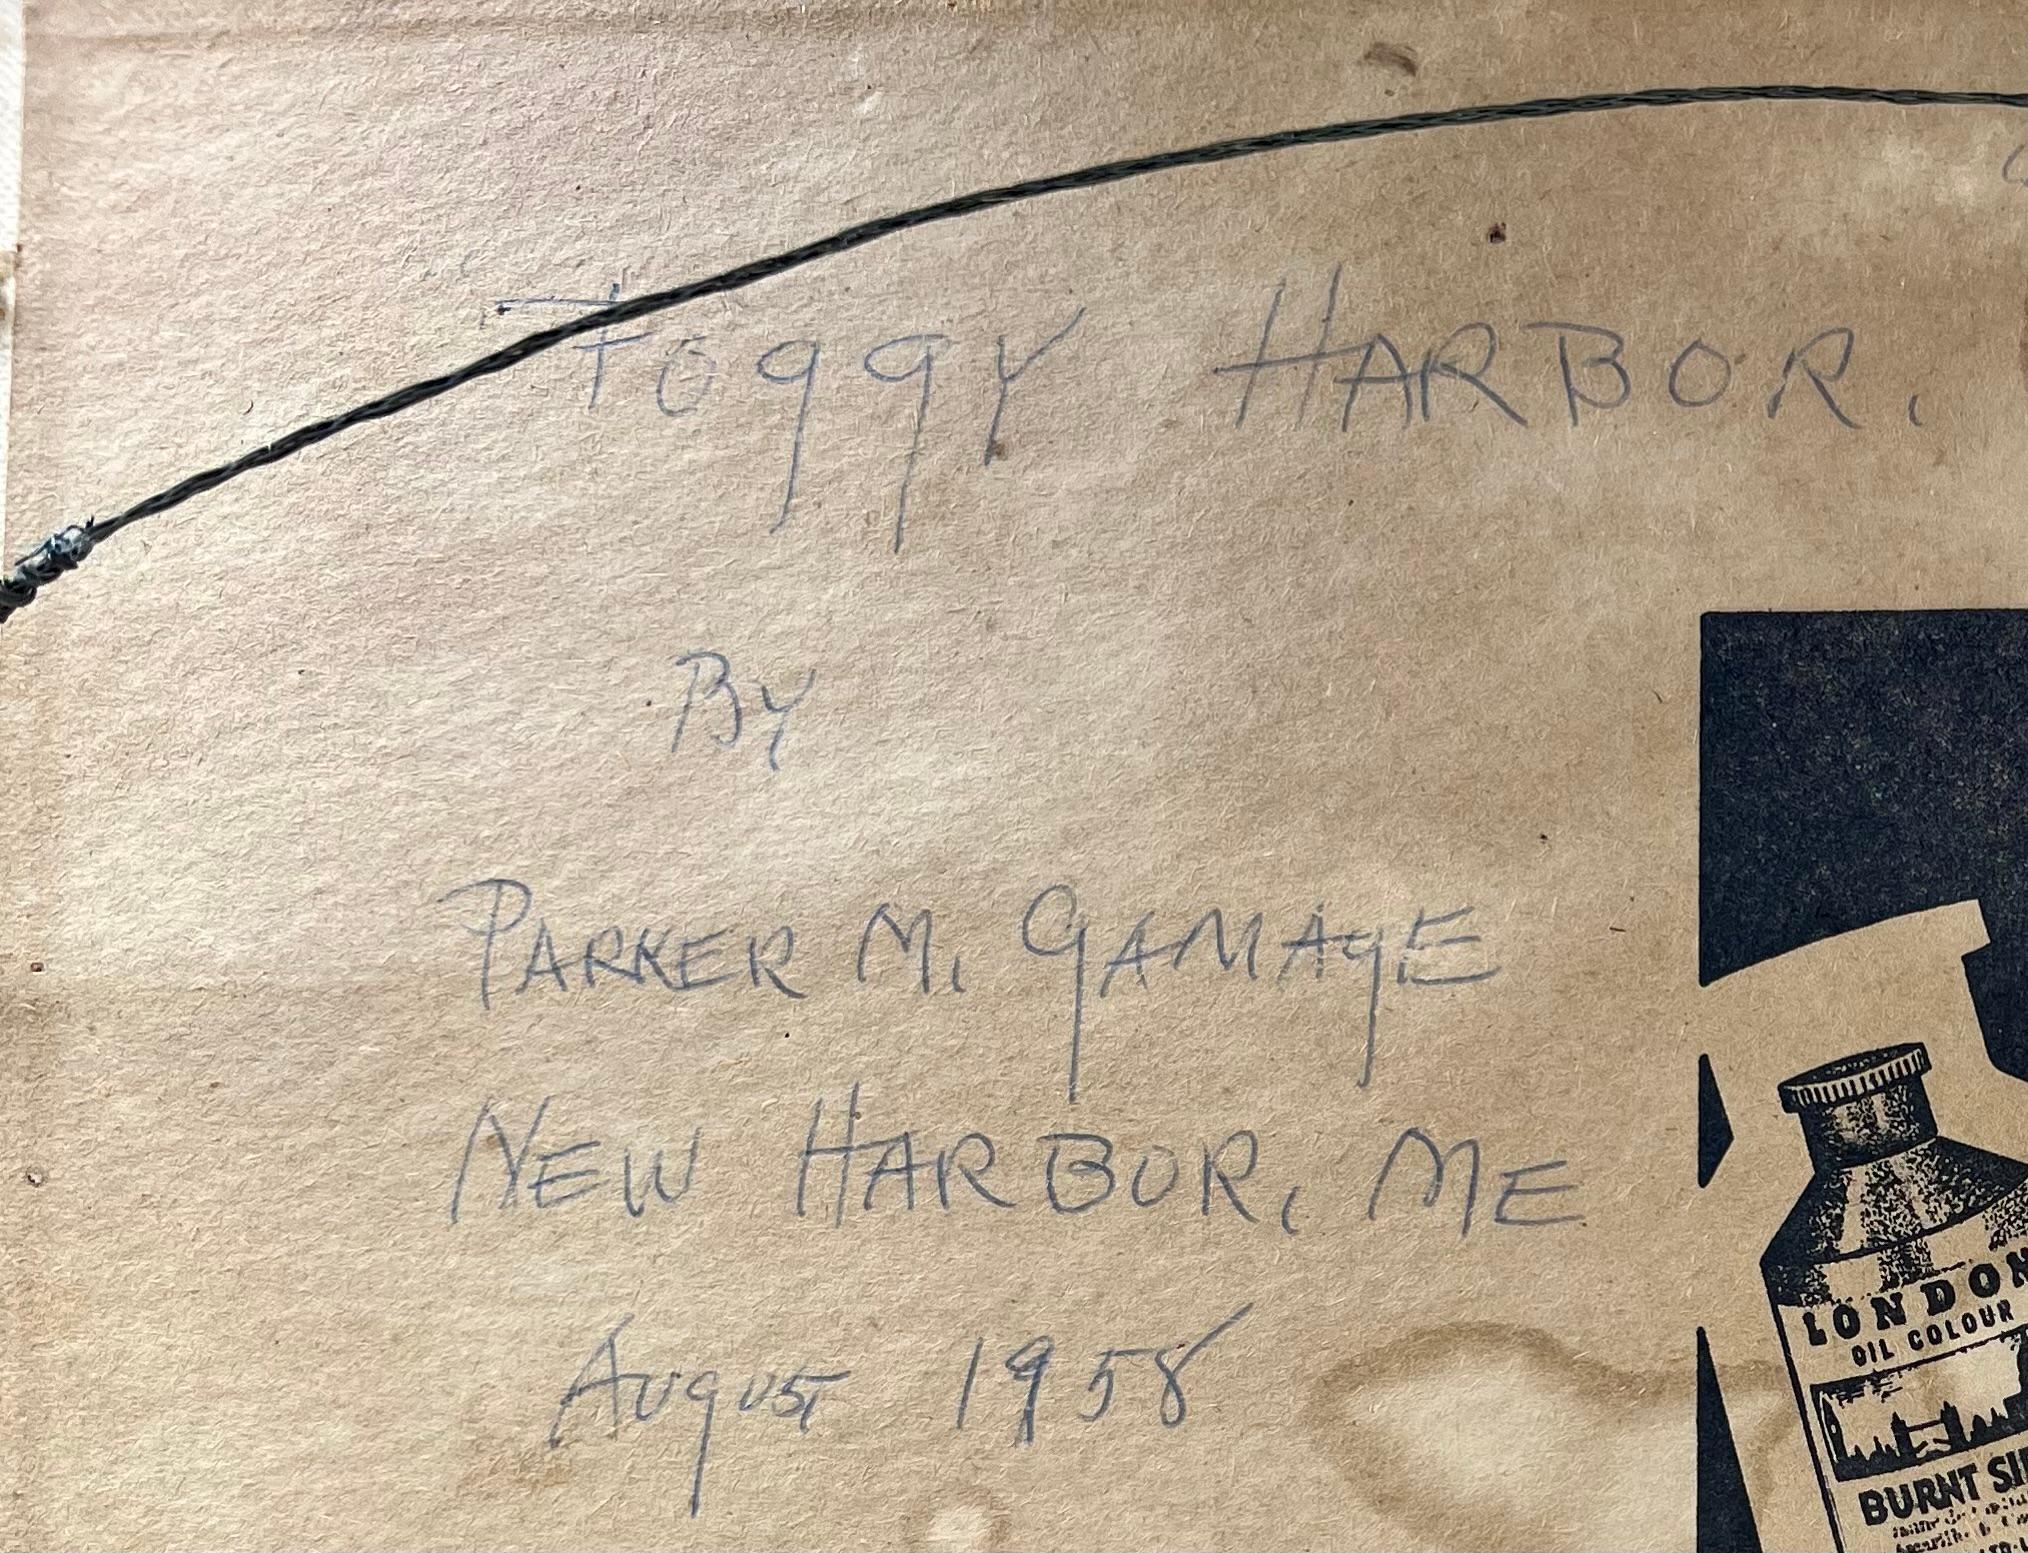 Stimmungsvolles Gemälde aus der Mitte des Jahrhunderts von Mid-Coast Maine. Öl auf Künstlerplatte, rechts unten signiert und auf der Rückseite datiert und bezeichnet.

Parker Gamage (1882-1960)
Gamage, der die meiste Zeit seines Lebens in New